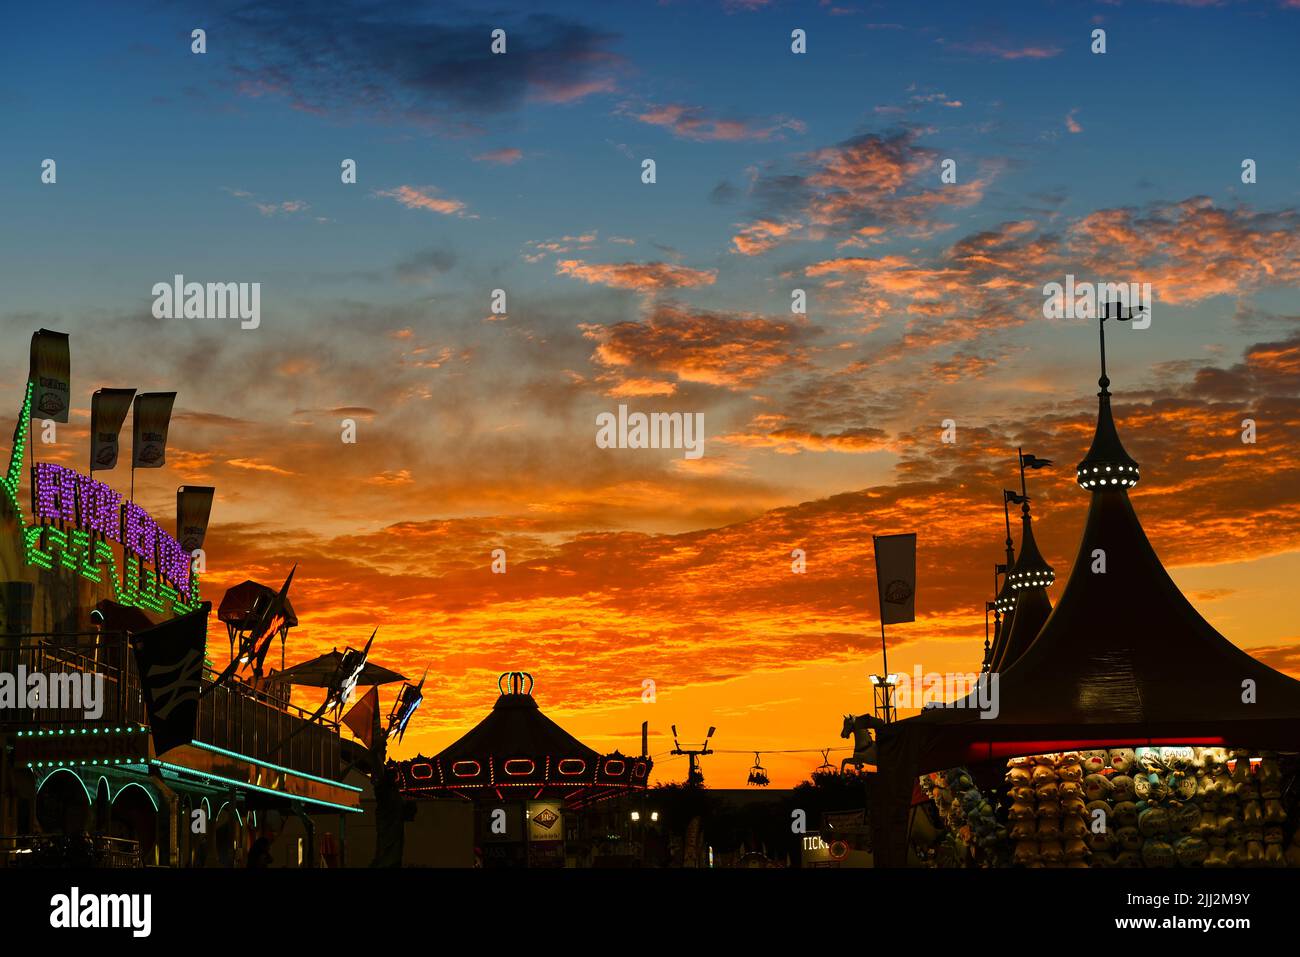 COSTA MESA, KALIFORNIEN - 20 JUL 2022: Wunderschöner Sonnenuntergang über dem Midway auf der Orange County Fair. Stockfoto